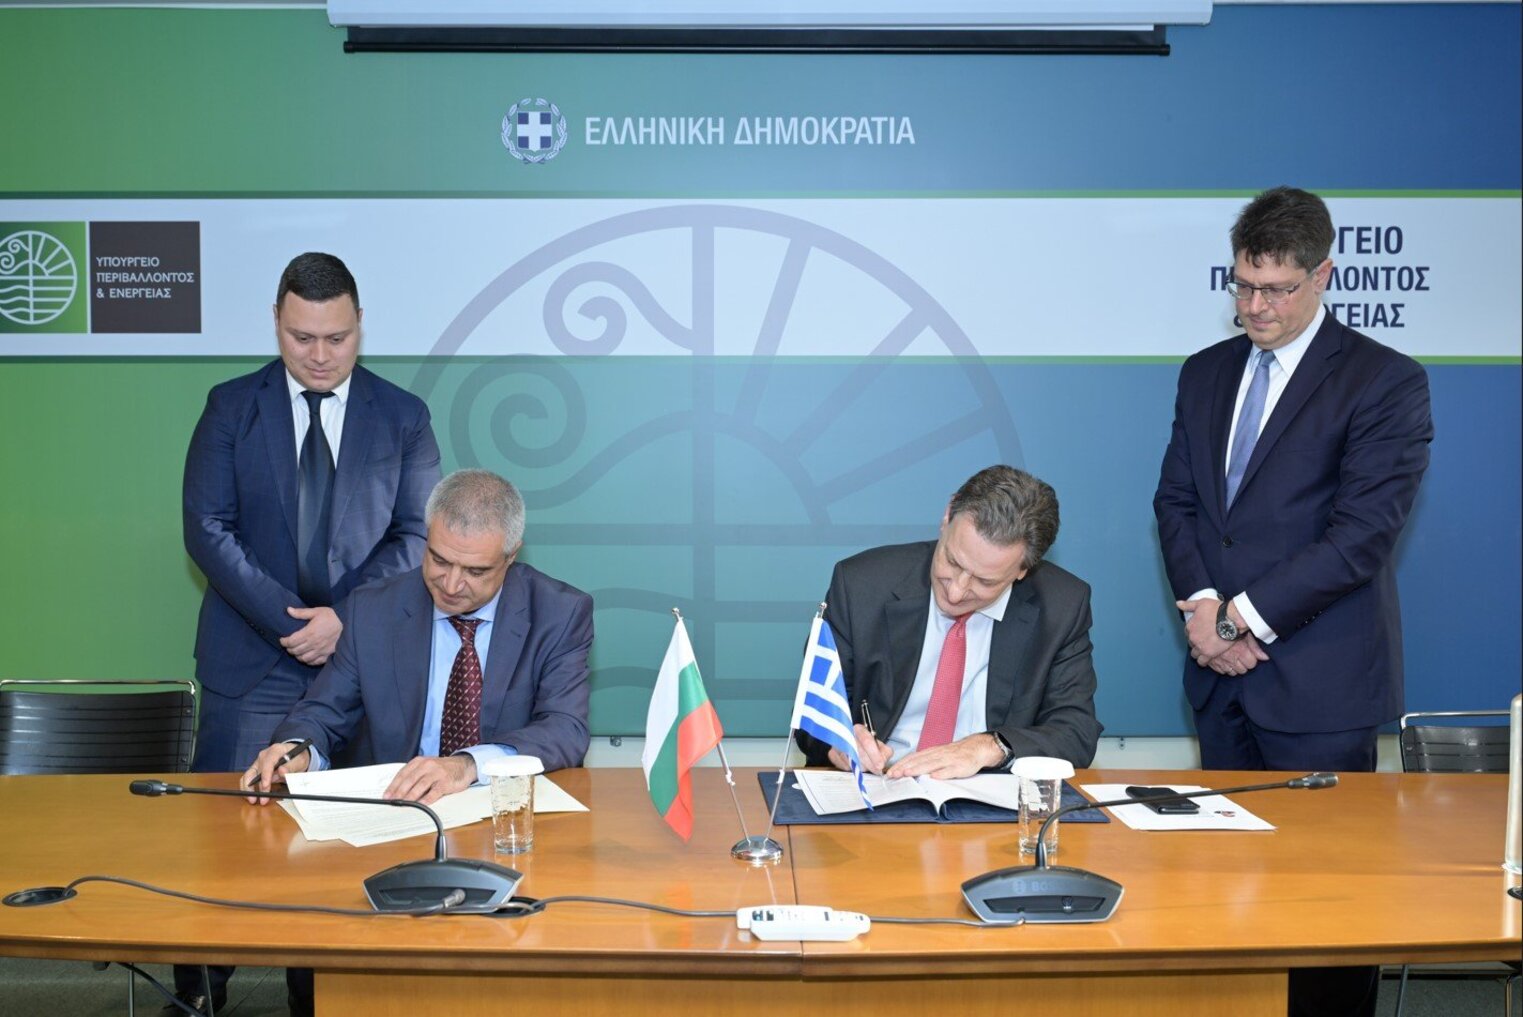 ΥΠΕΝ: Υπογραφή Μνημονίου Συνεργασίας Ελλάδας - Βουλγαρίας για ενεργειακά ζητήματα